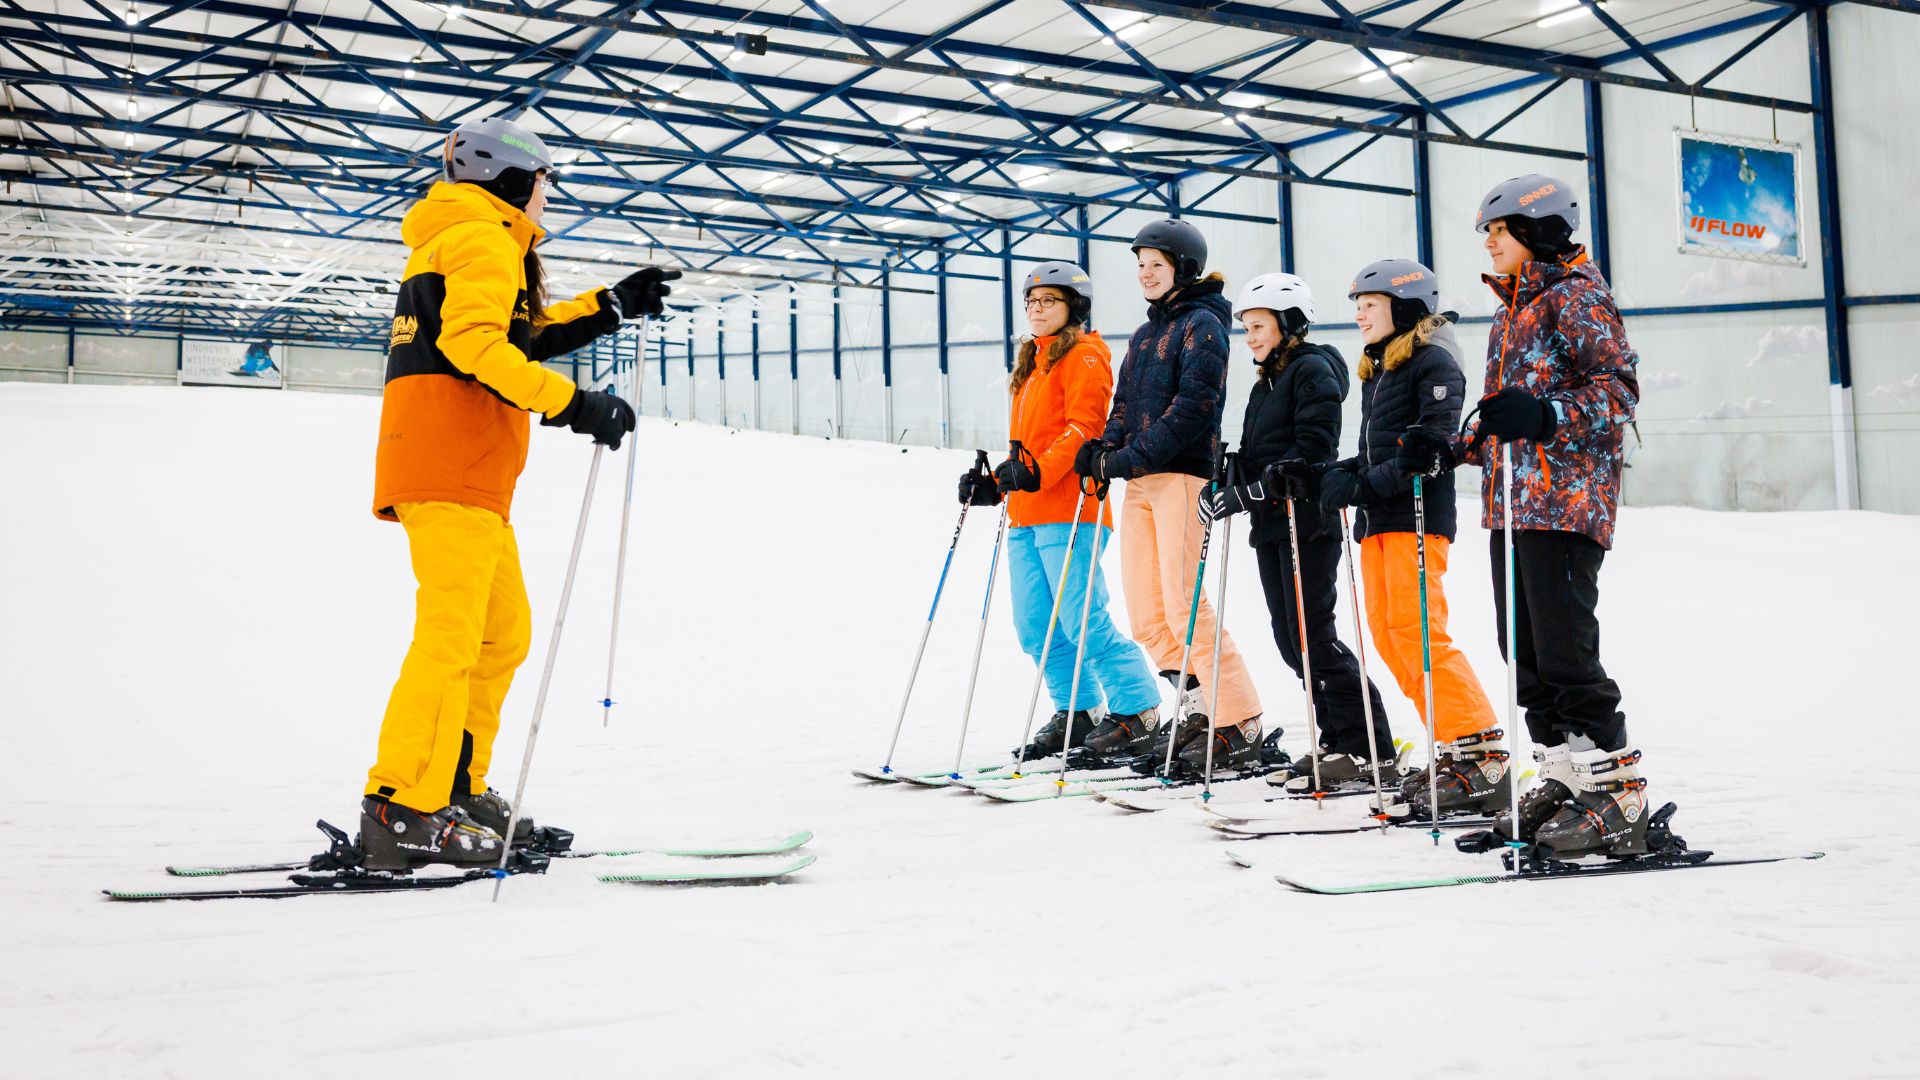 Skileraar geeft skiles aan een groepje leerlingen van een school.